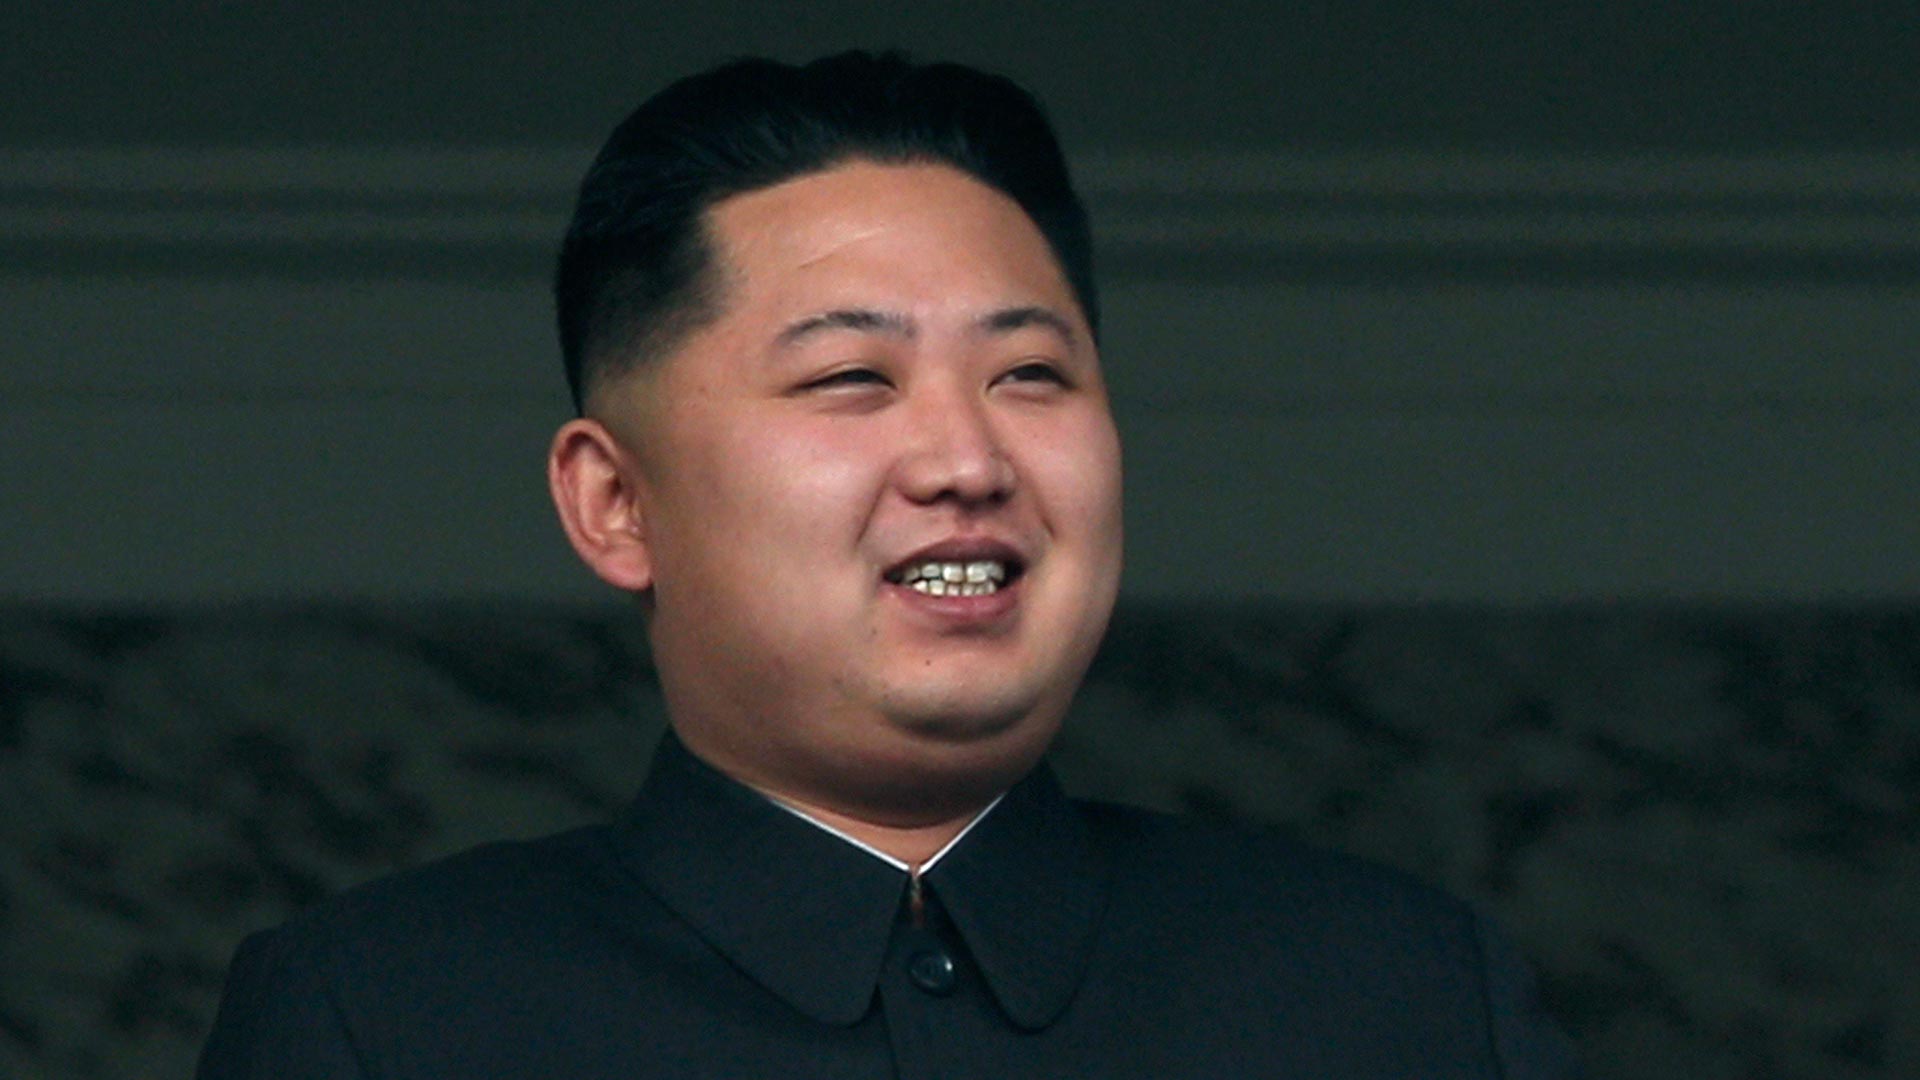 Kim Jong-un envía un mensaje a unos trabajadores pero sigue sin aparecer en público